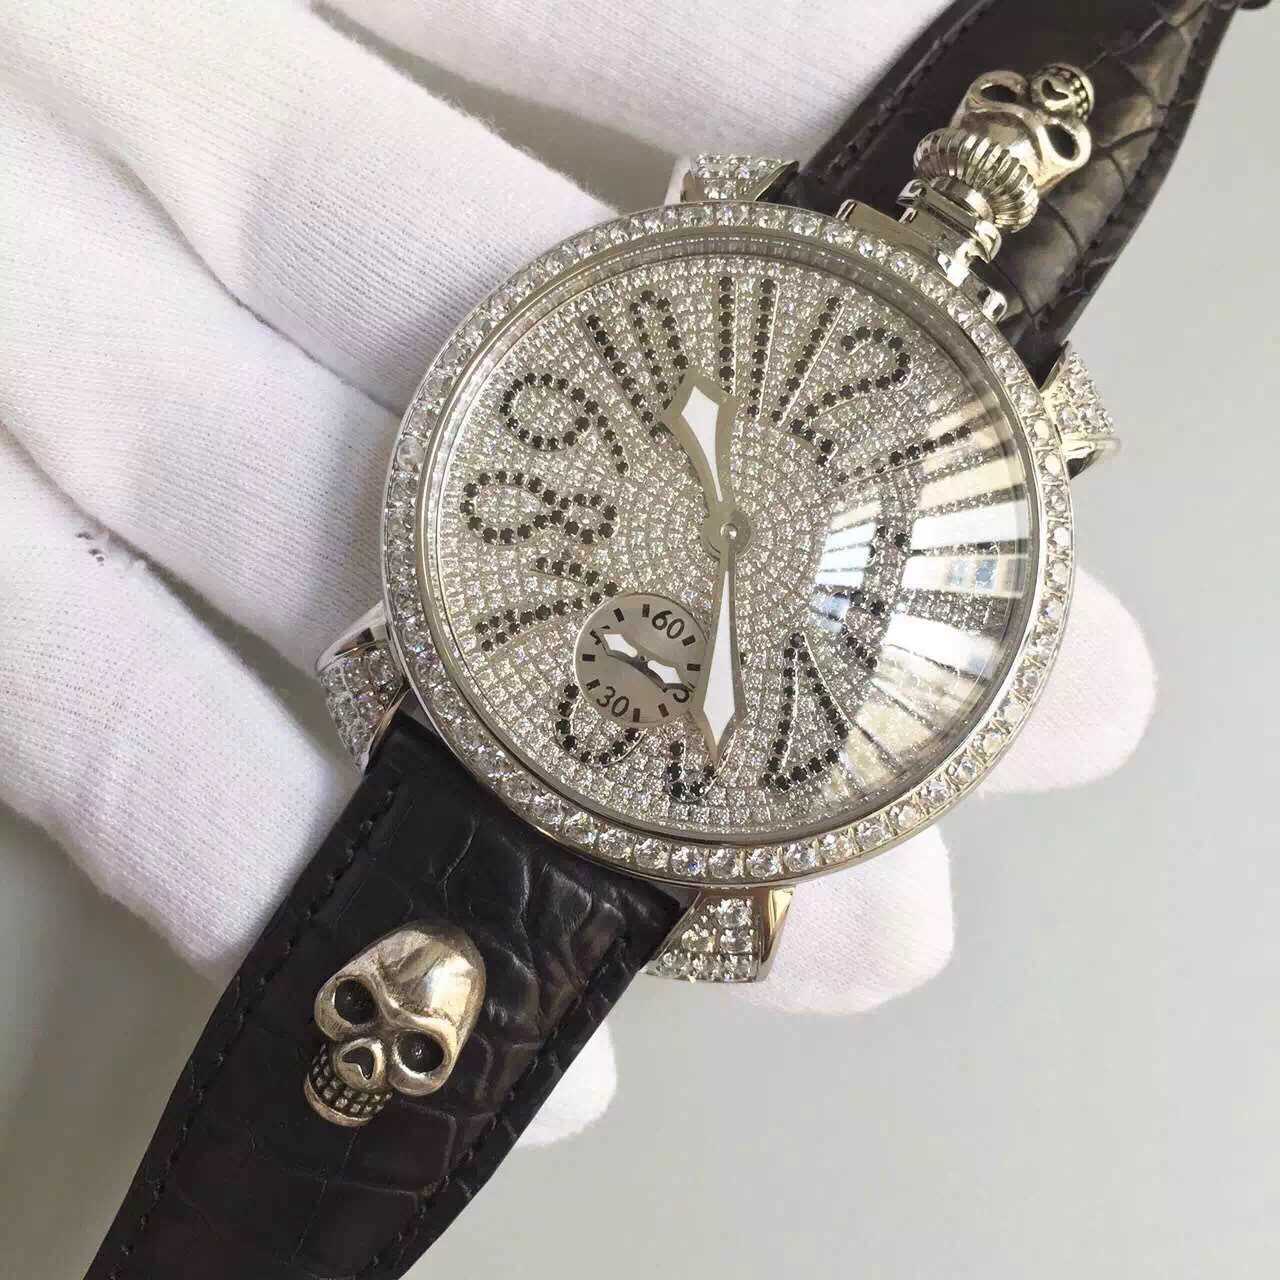 2022122916070069 - GAGA原裝純銀手錶￥1890